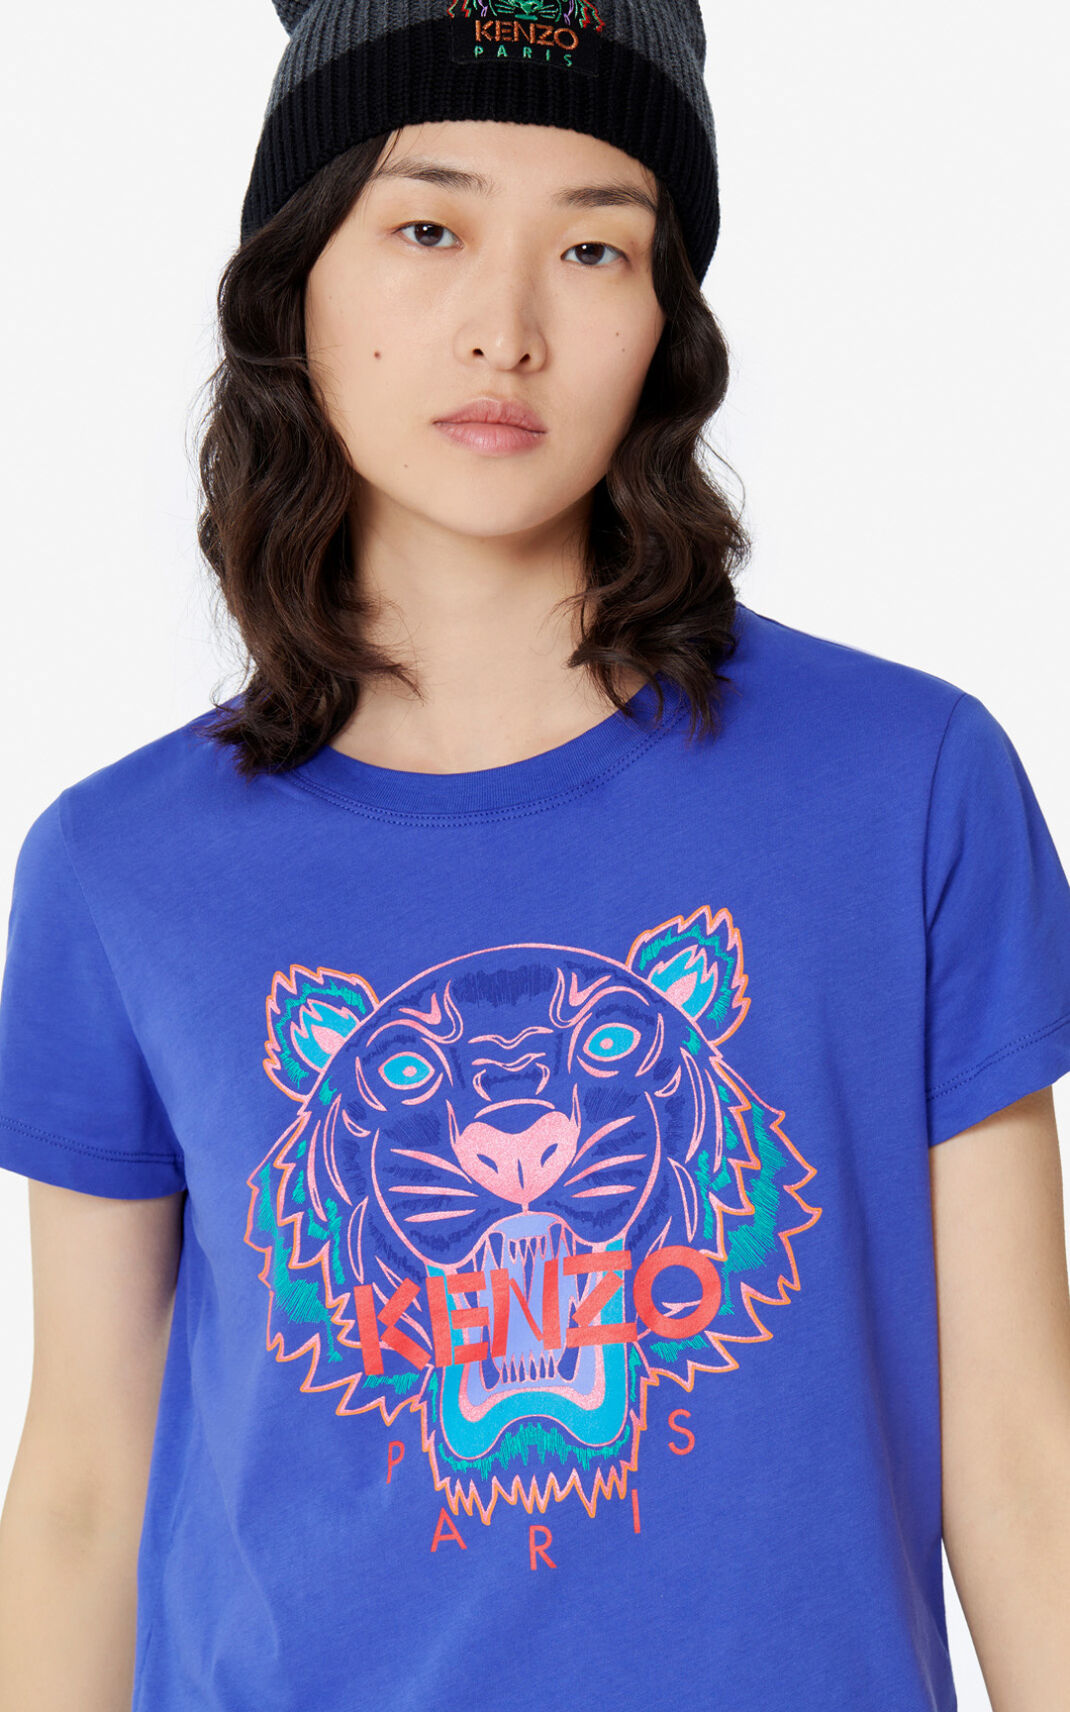 Camisetas Kenzo Tiger Mujer Moradas - SKU.6950391